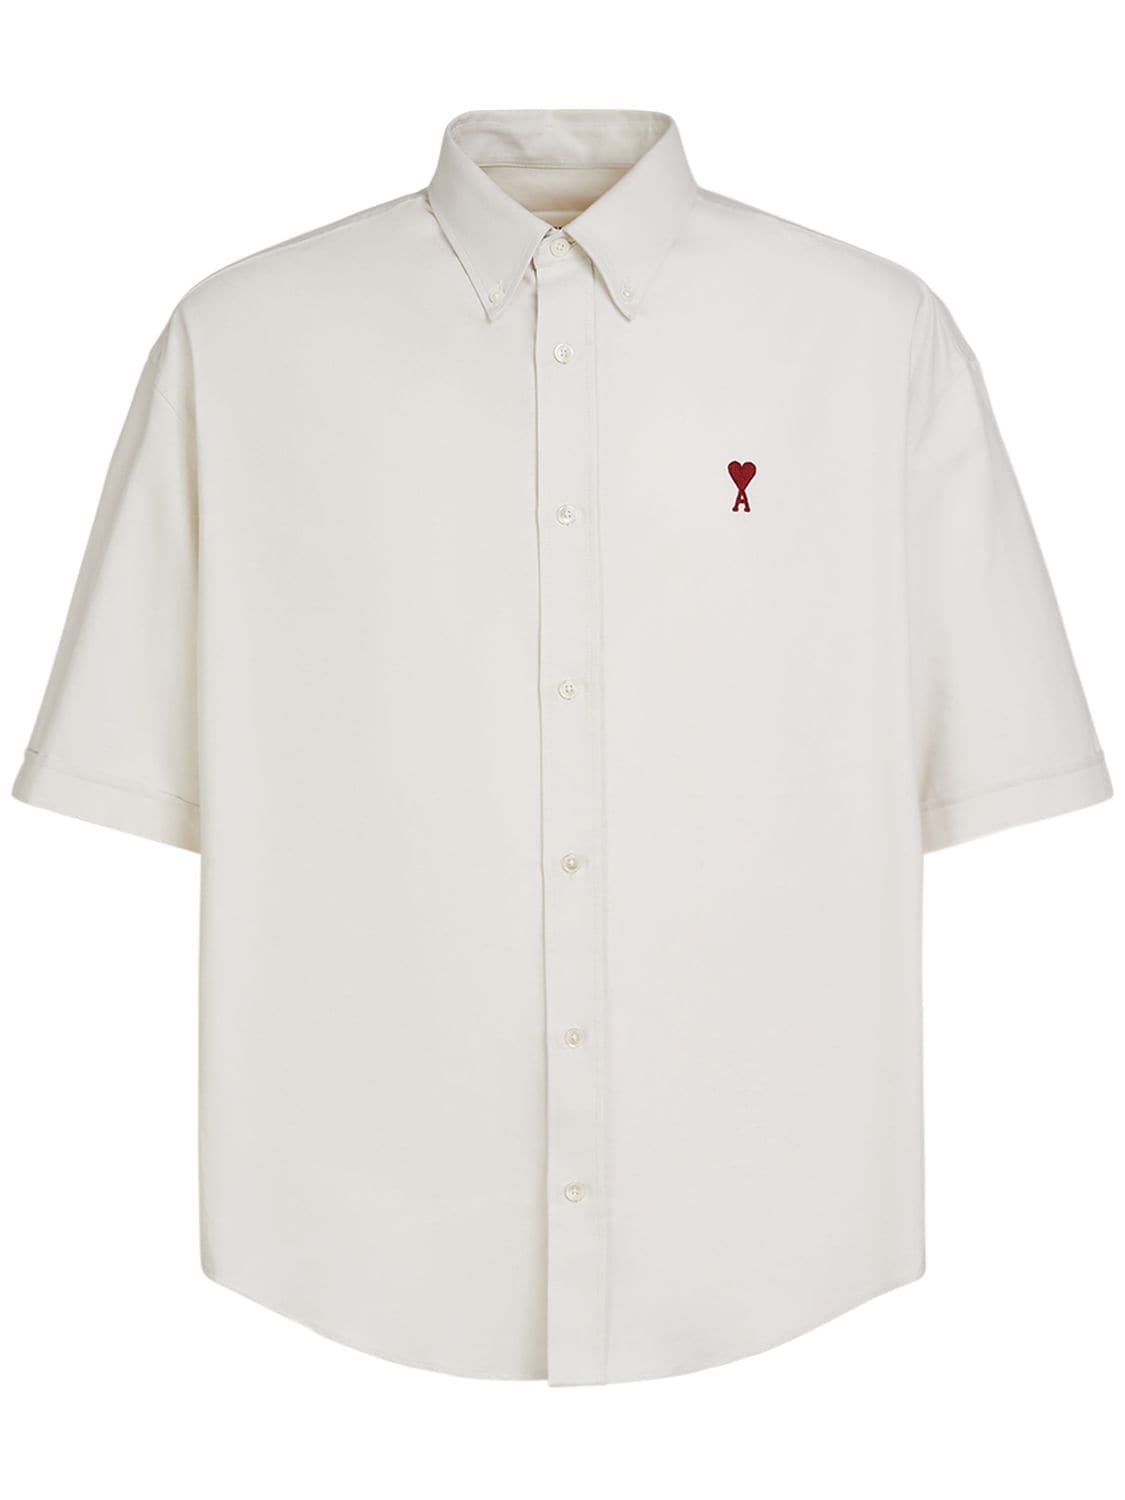 Image of Boxy Cotton Oxford Shirt